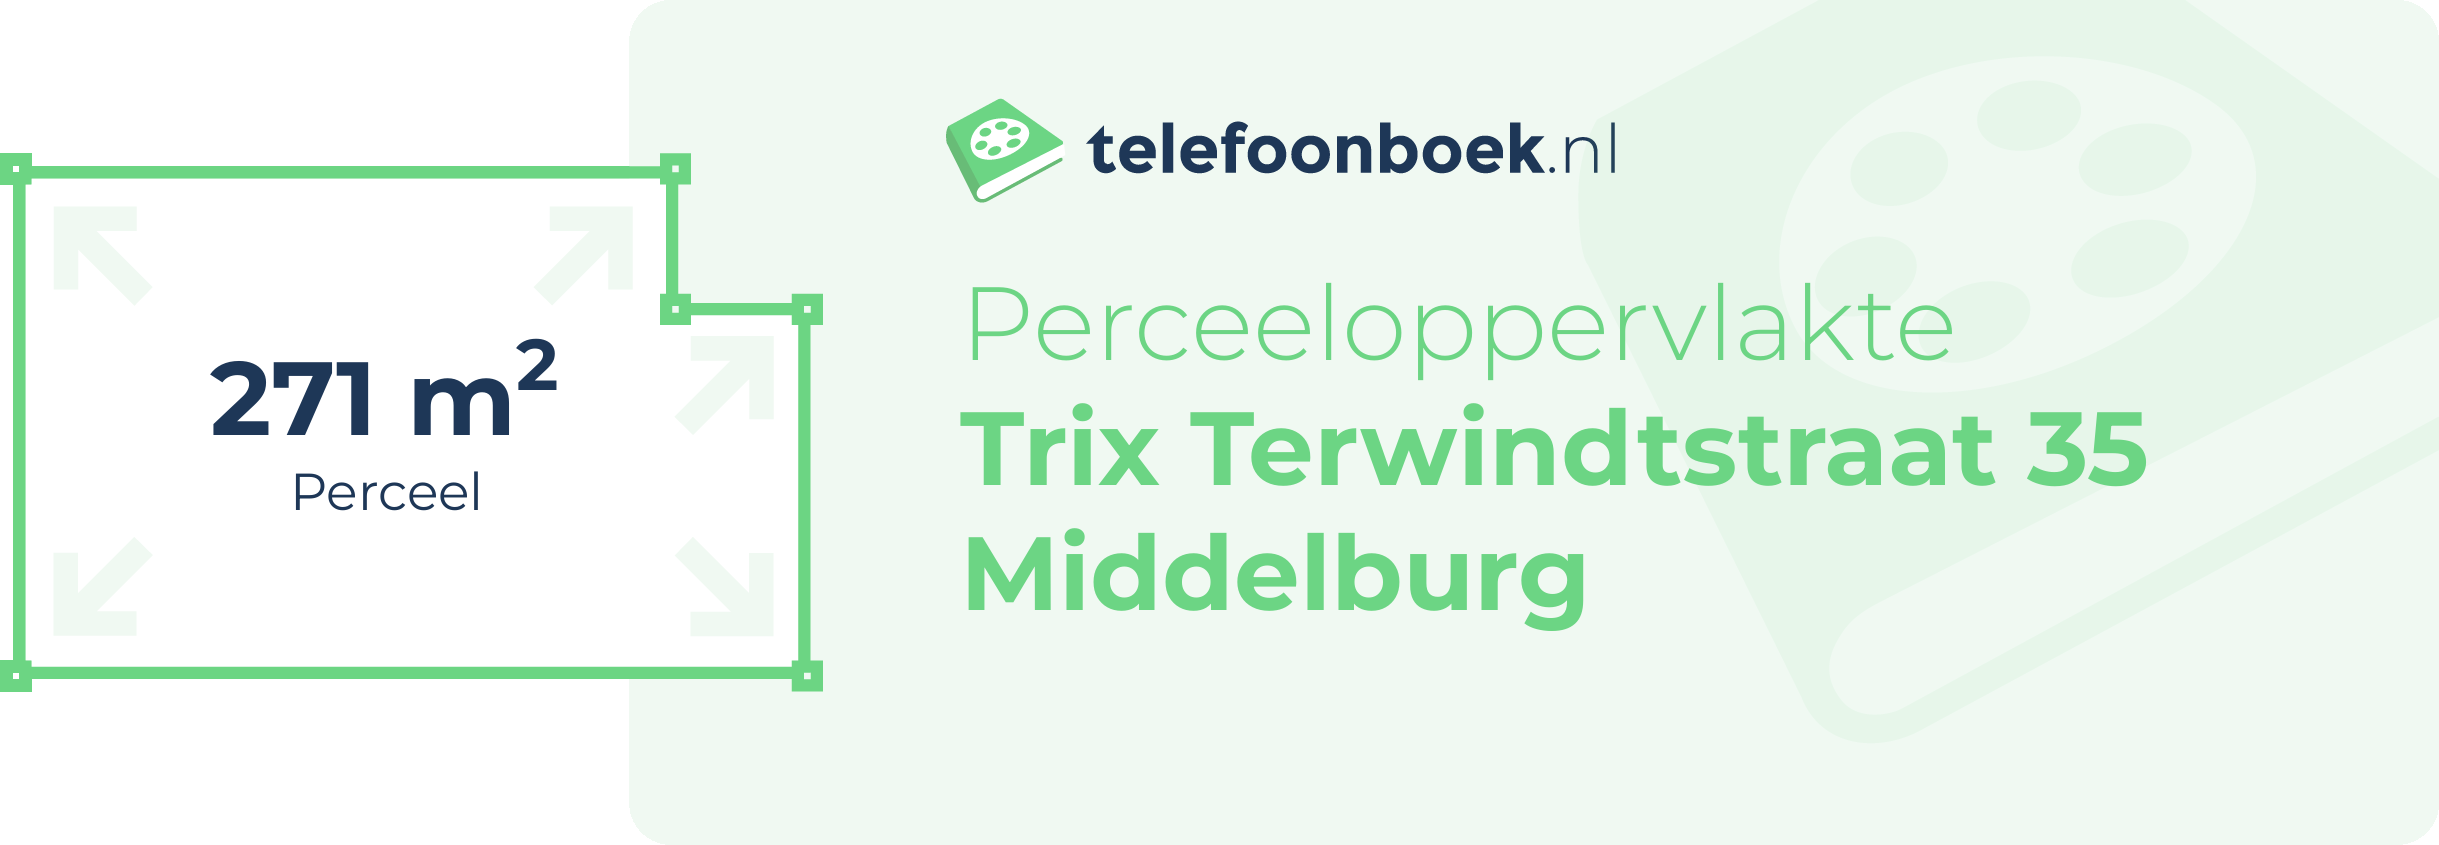 Perceeloppervlakte Trix Terwindtstraat 35 Middelburg